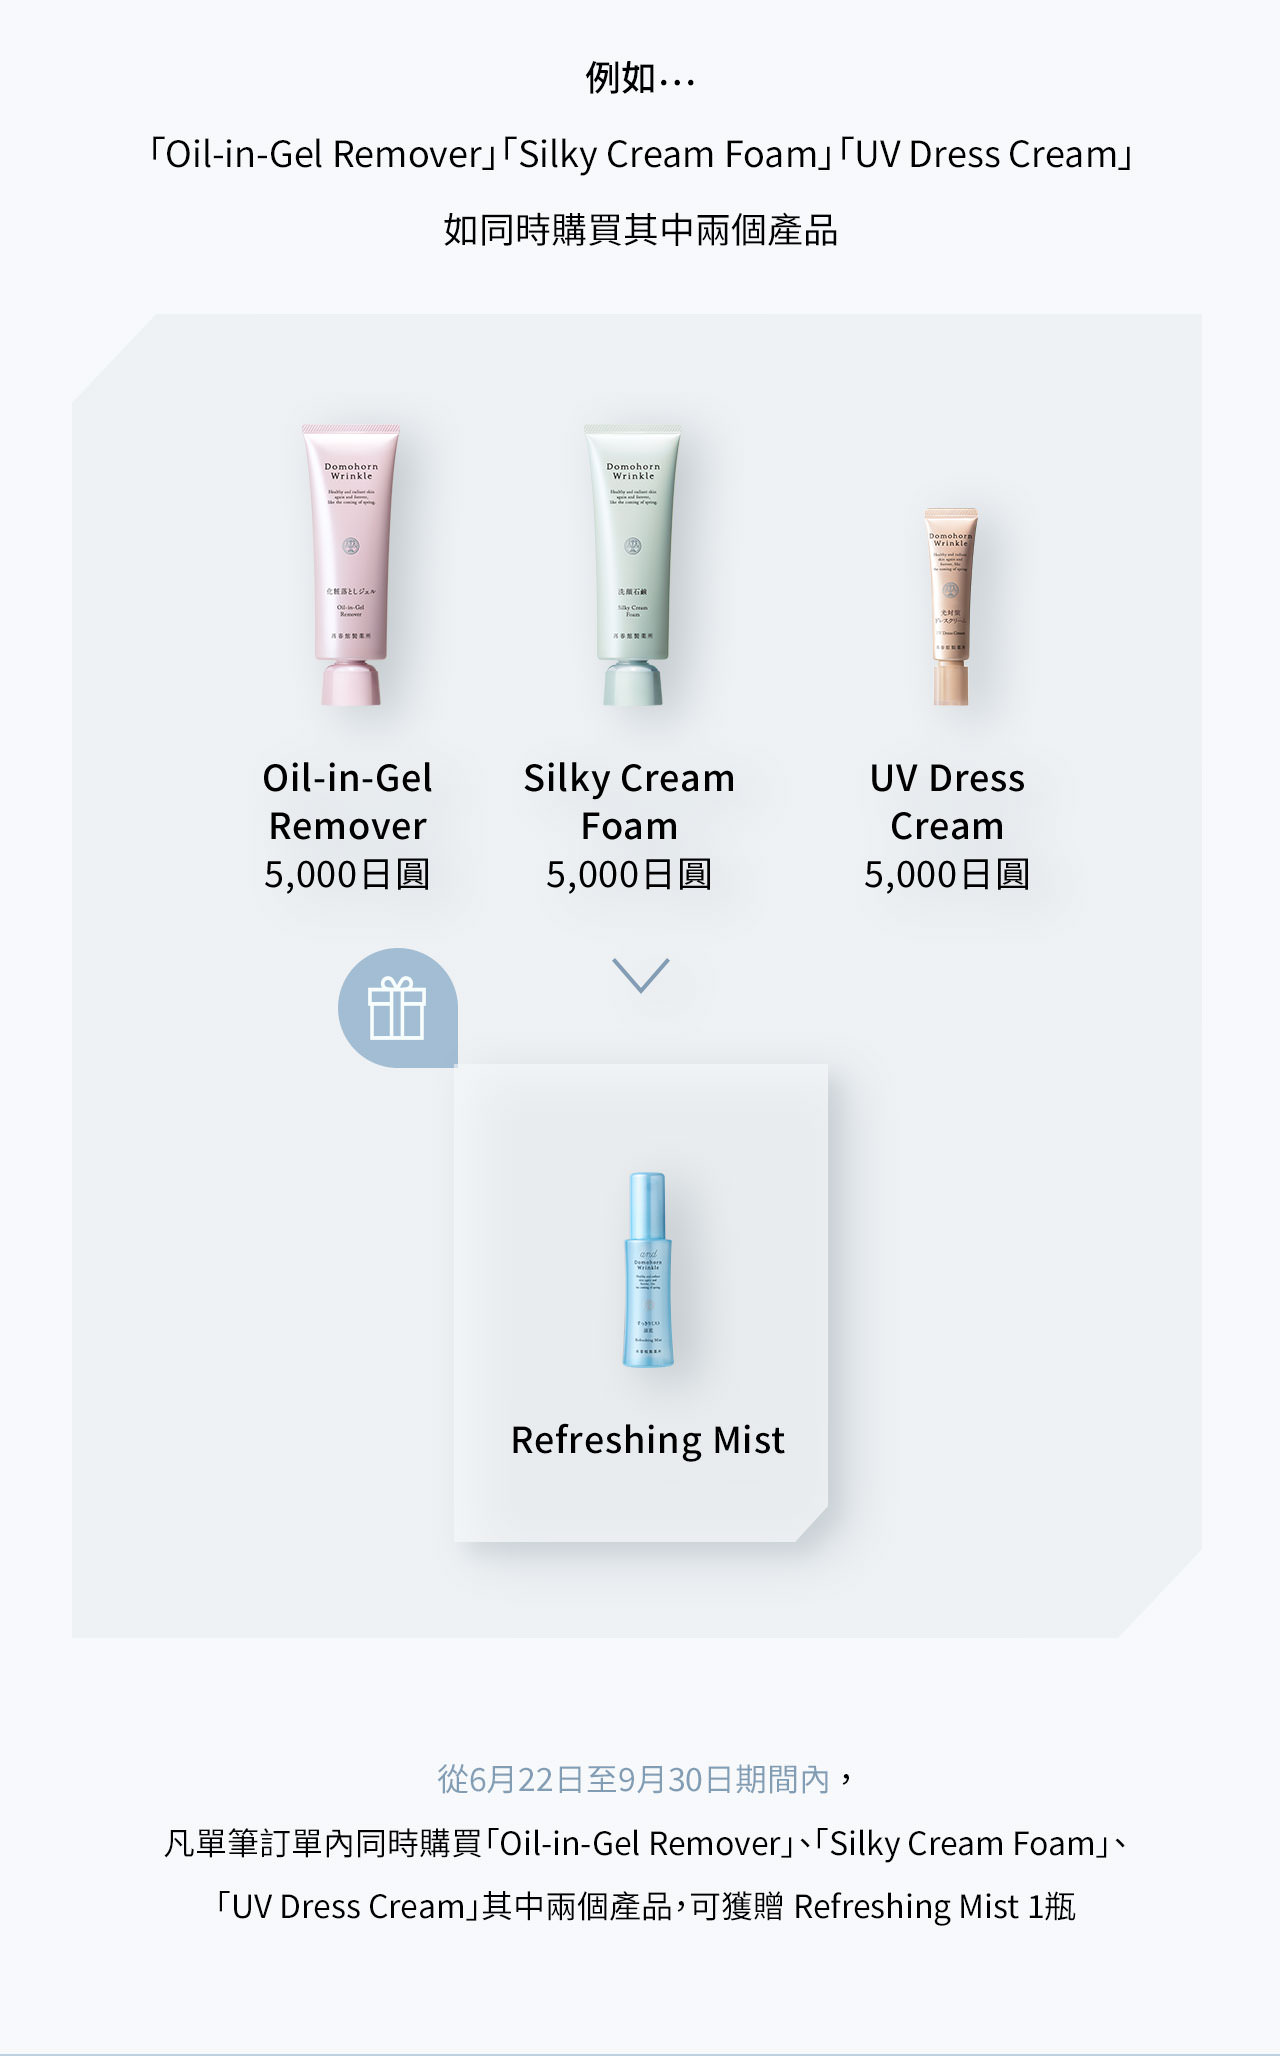 例如…「Oil-in-Gel Remover」「Silky Cream Foam」「UV Dress Cream」如同時購買其中兩個產品 從6月22日至9月30日期間內，凡單筆訂單內同時購買「Oil-in-Gel Remover」，「Silky Cream Foam」，「UV Dress Cream」其中兩個產品，可獲贈 Refreshing Mist 1瓶